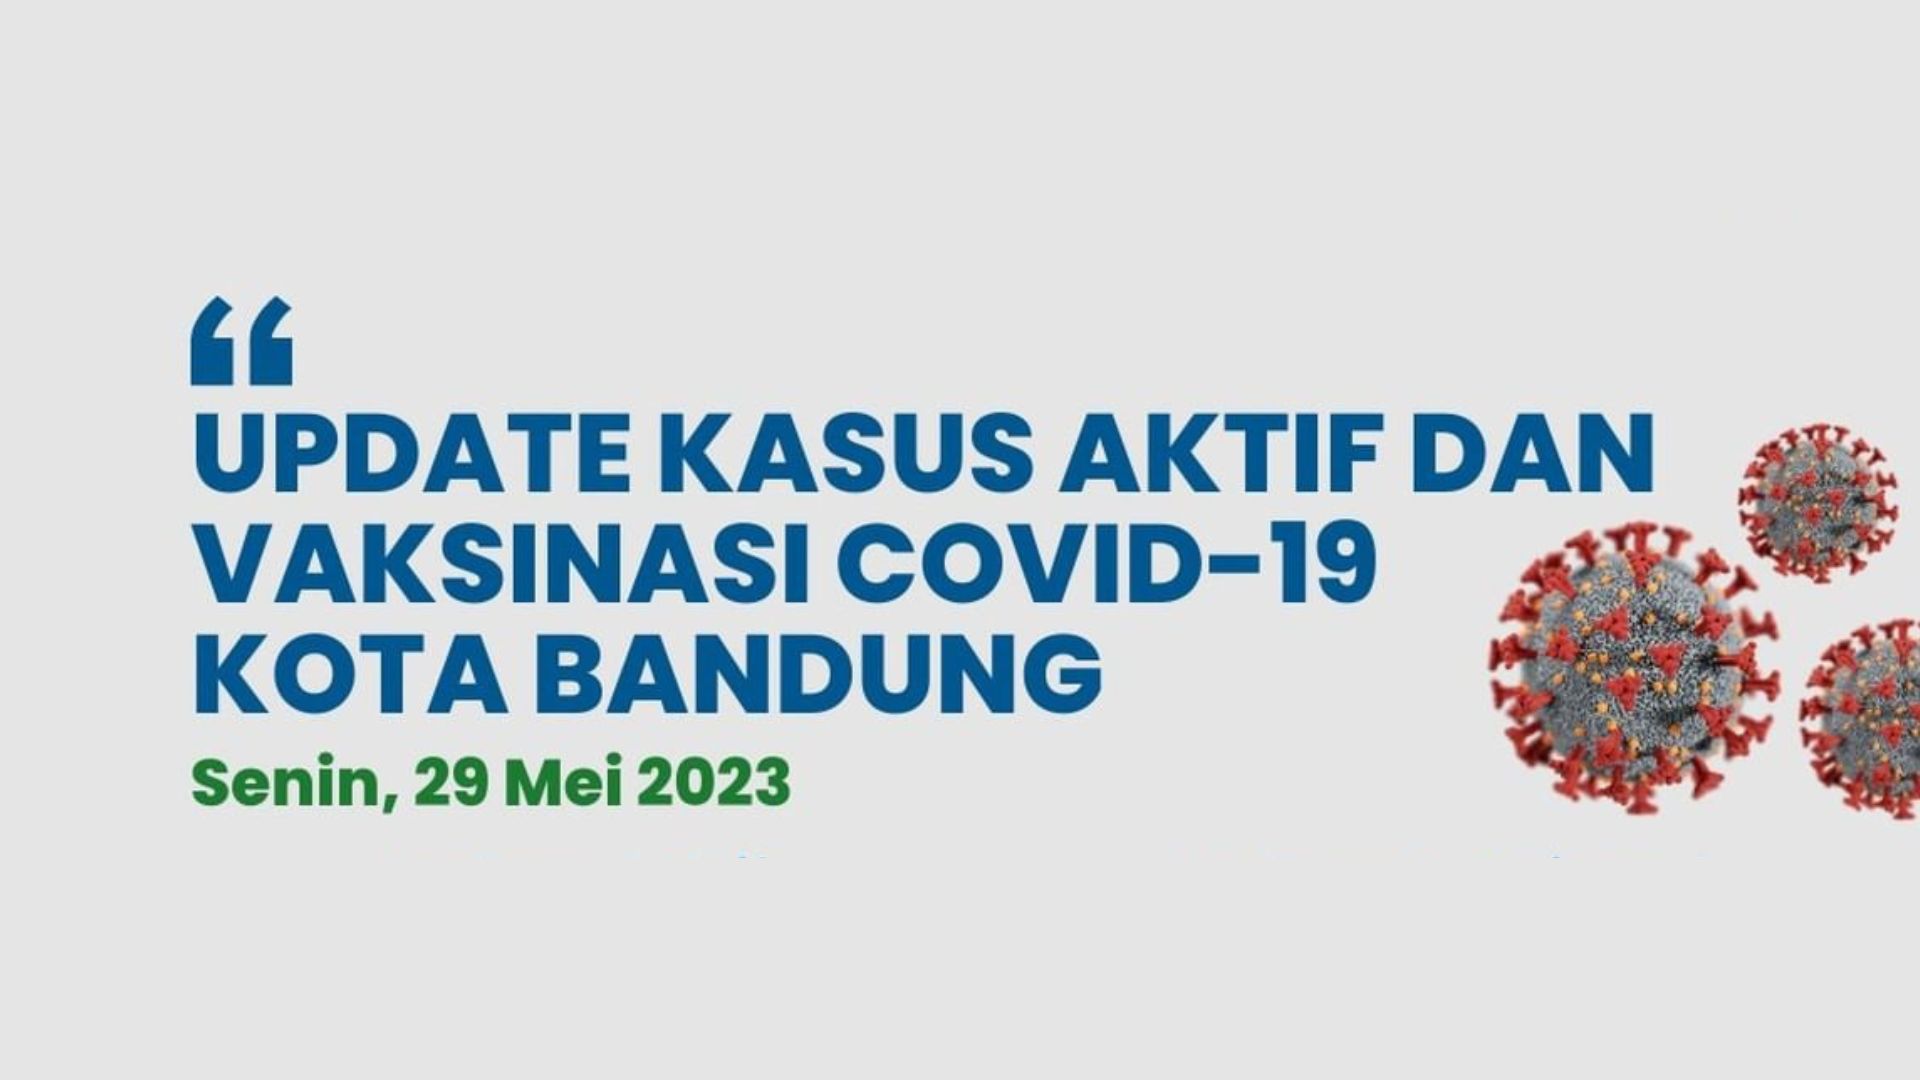 UPDATE STATISTIK COVID-19 DI KOTA BANDUNG PER TANGGAL 29 MEI 2023